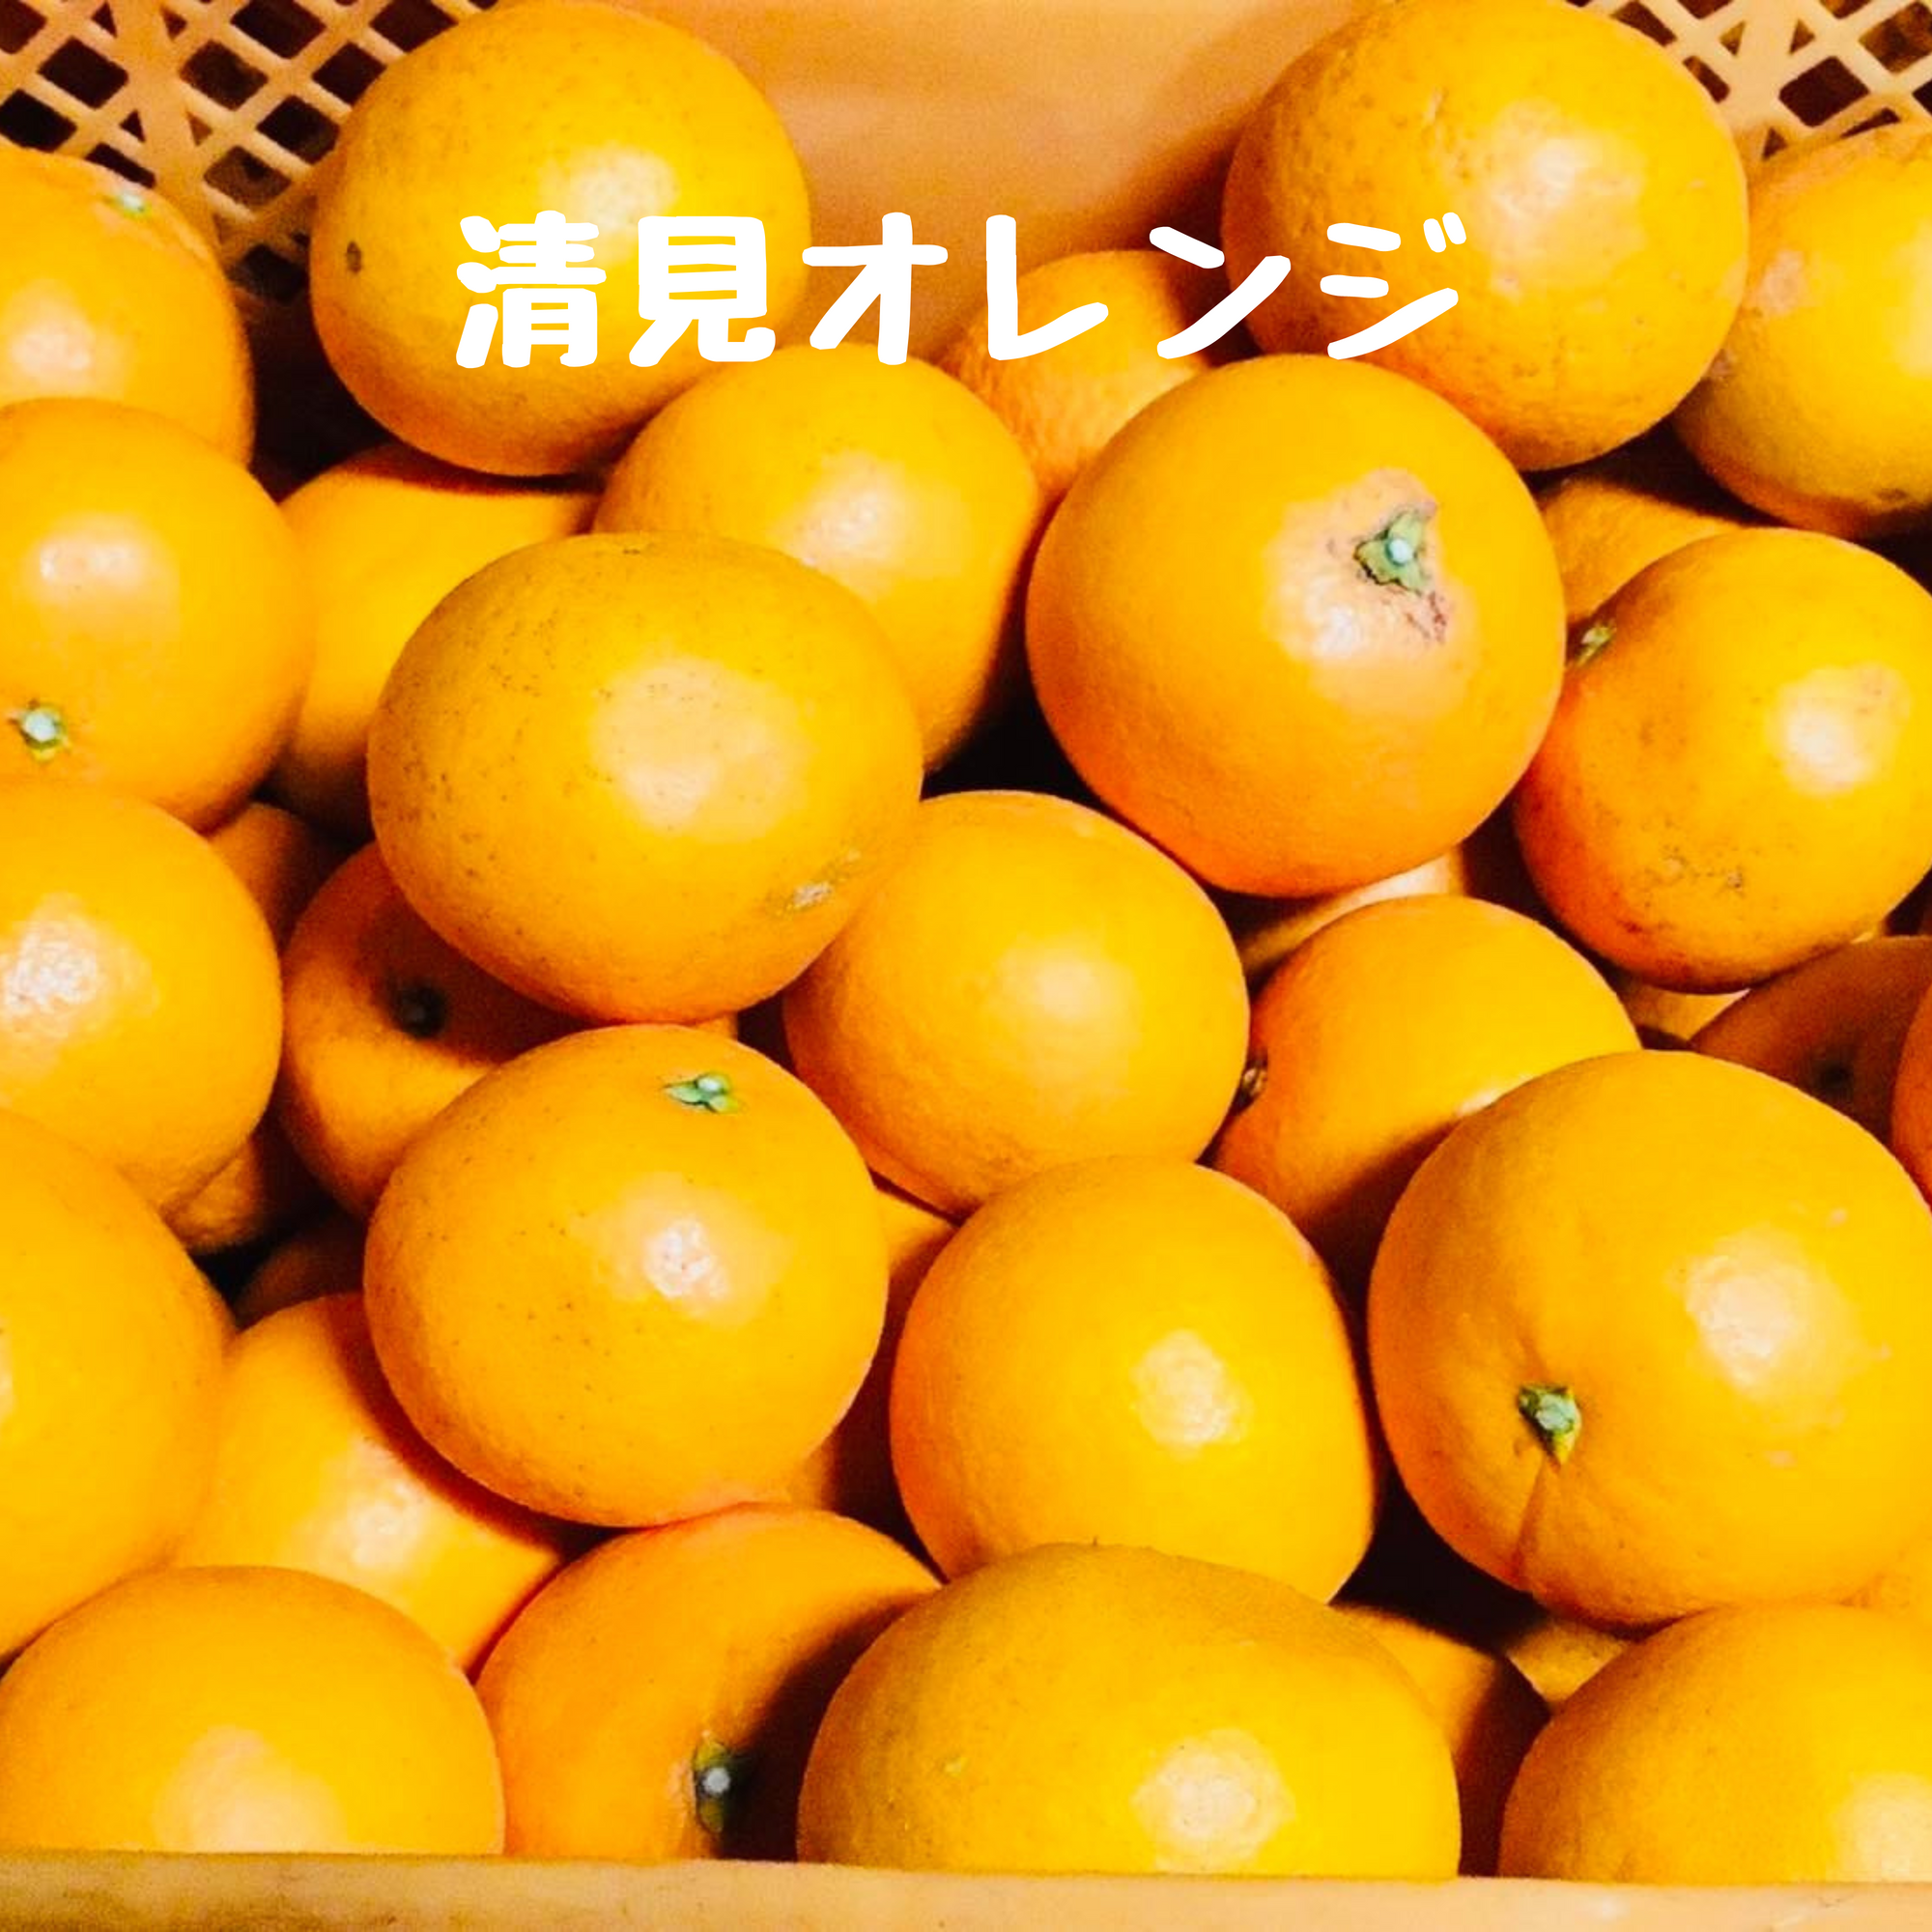 清見オレンジとポンカン(甘ポン)の詰め合わせ(清見オレンジ多め)